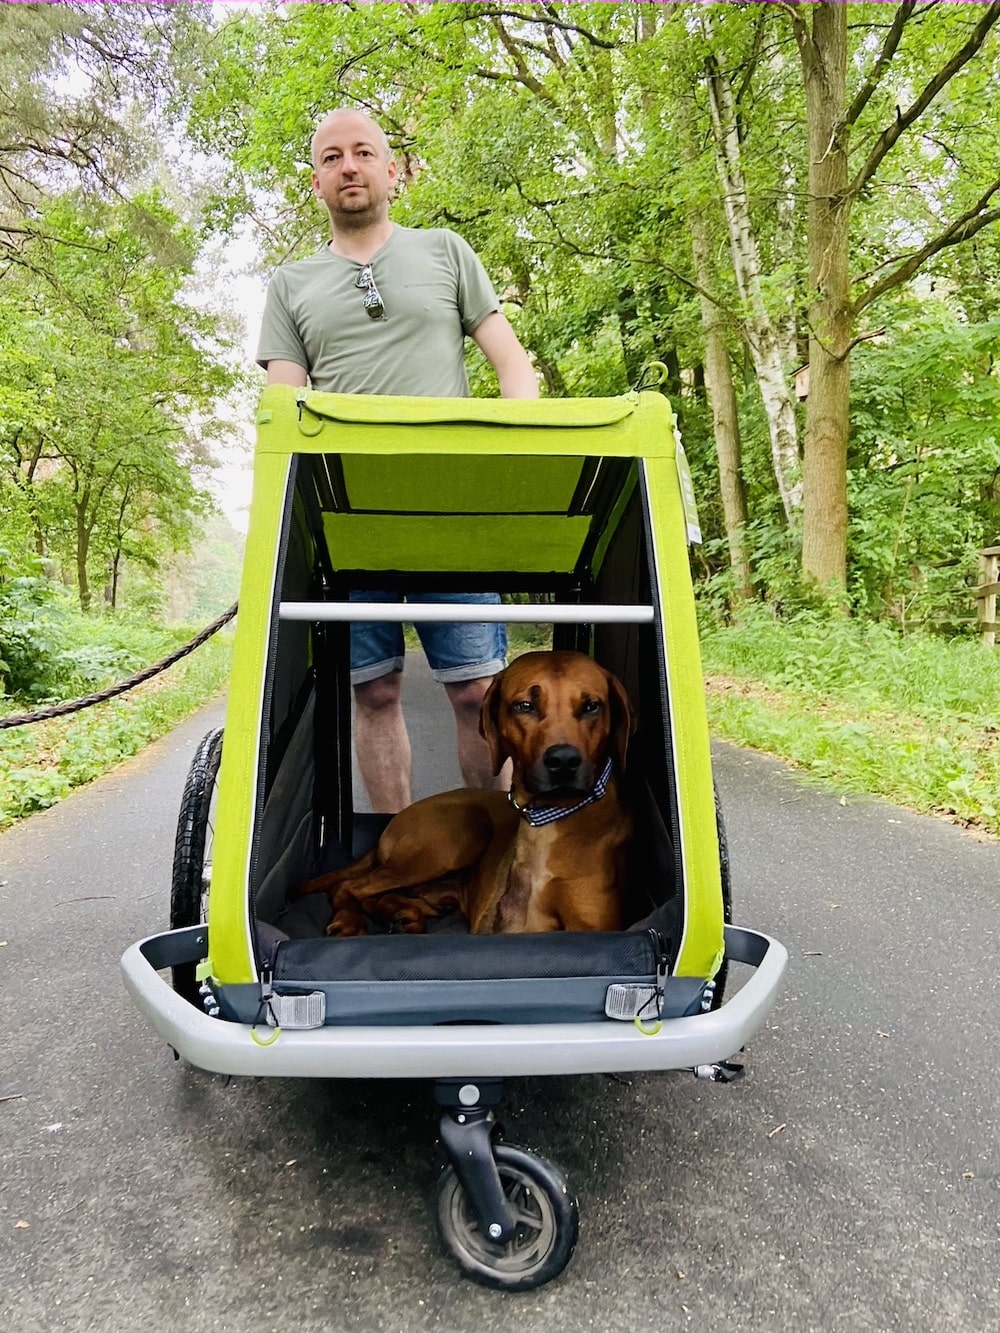 Dog carrier backpack or pet stroller